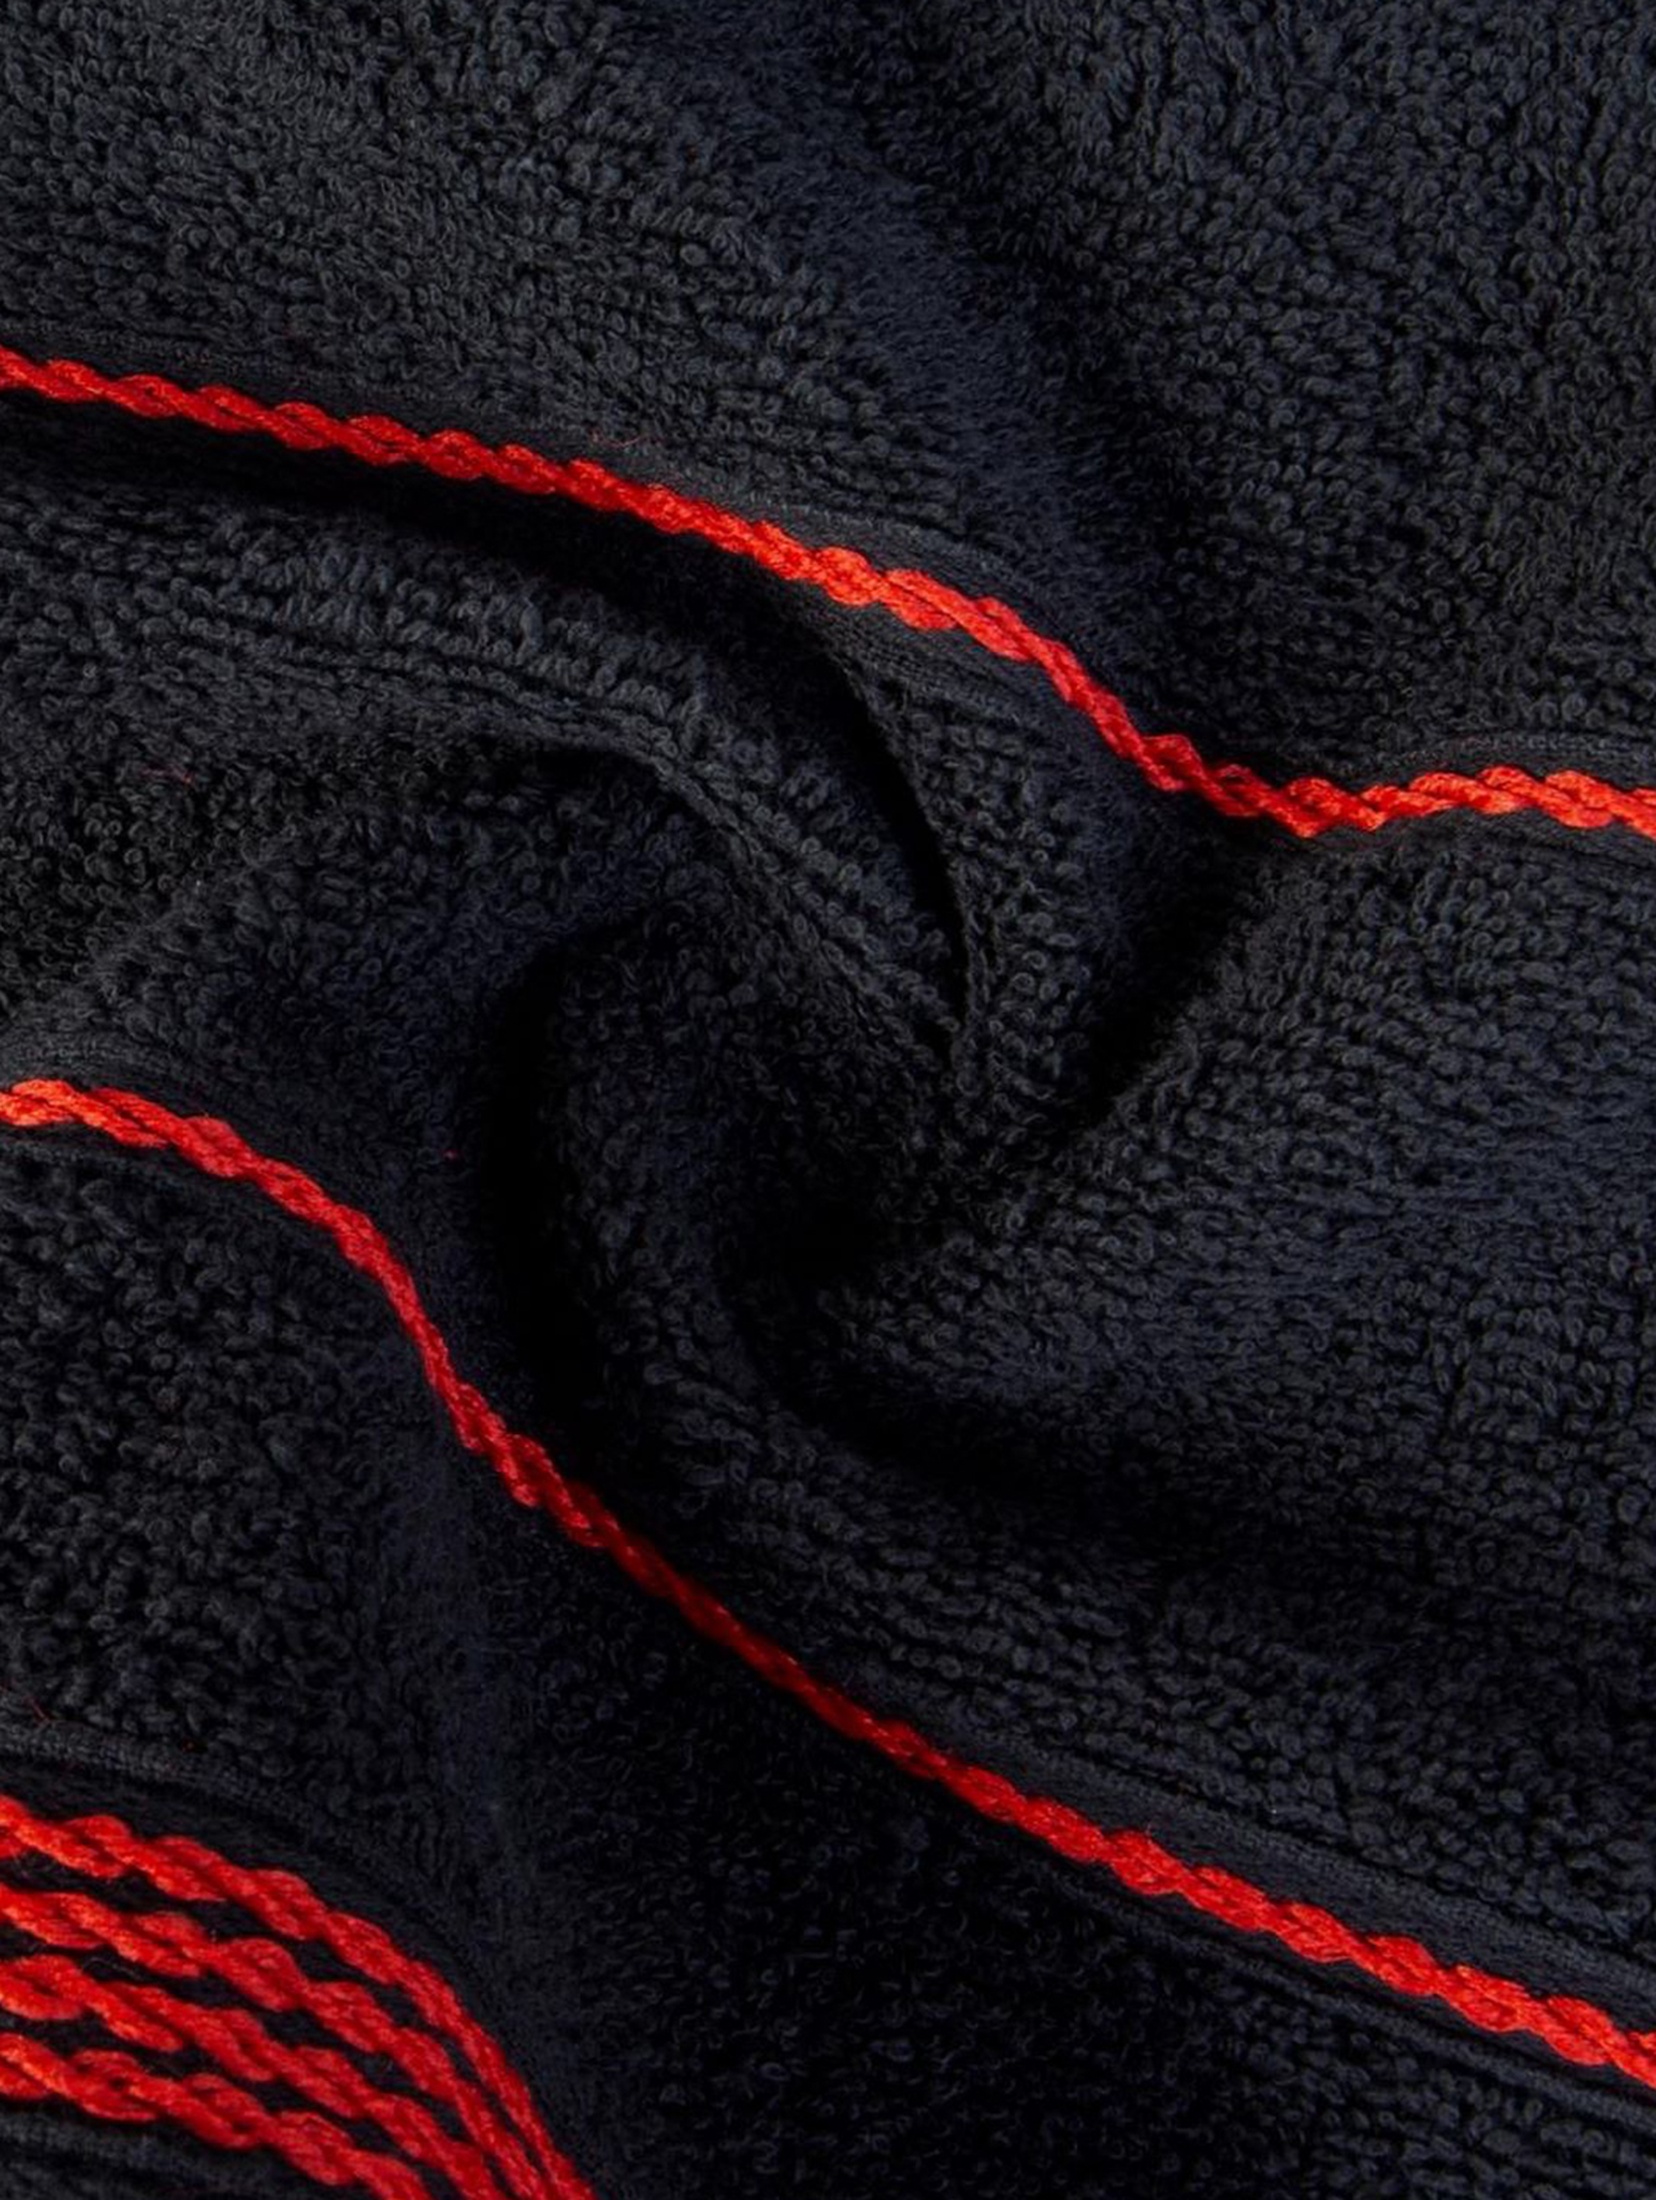 Ręcznik Mira 70x140 cm - czarny